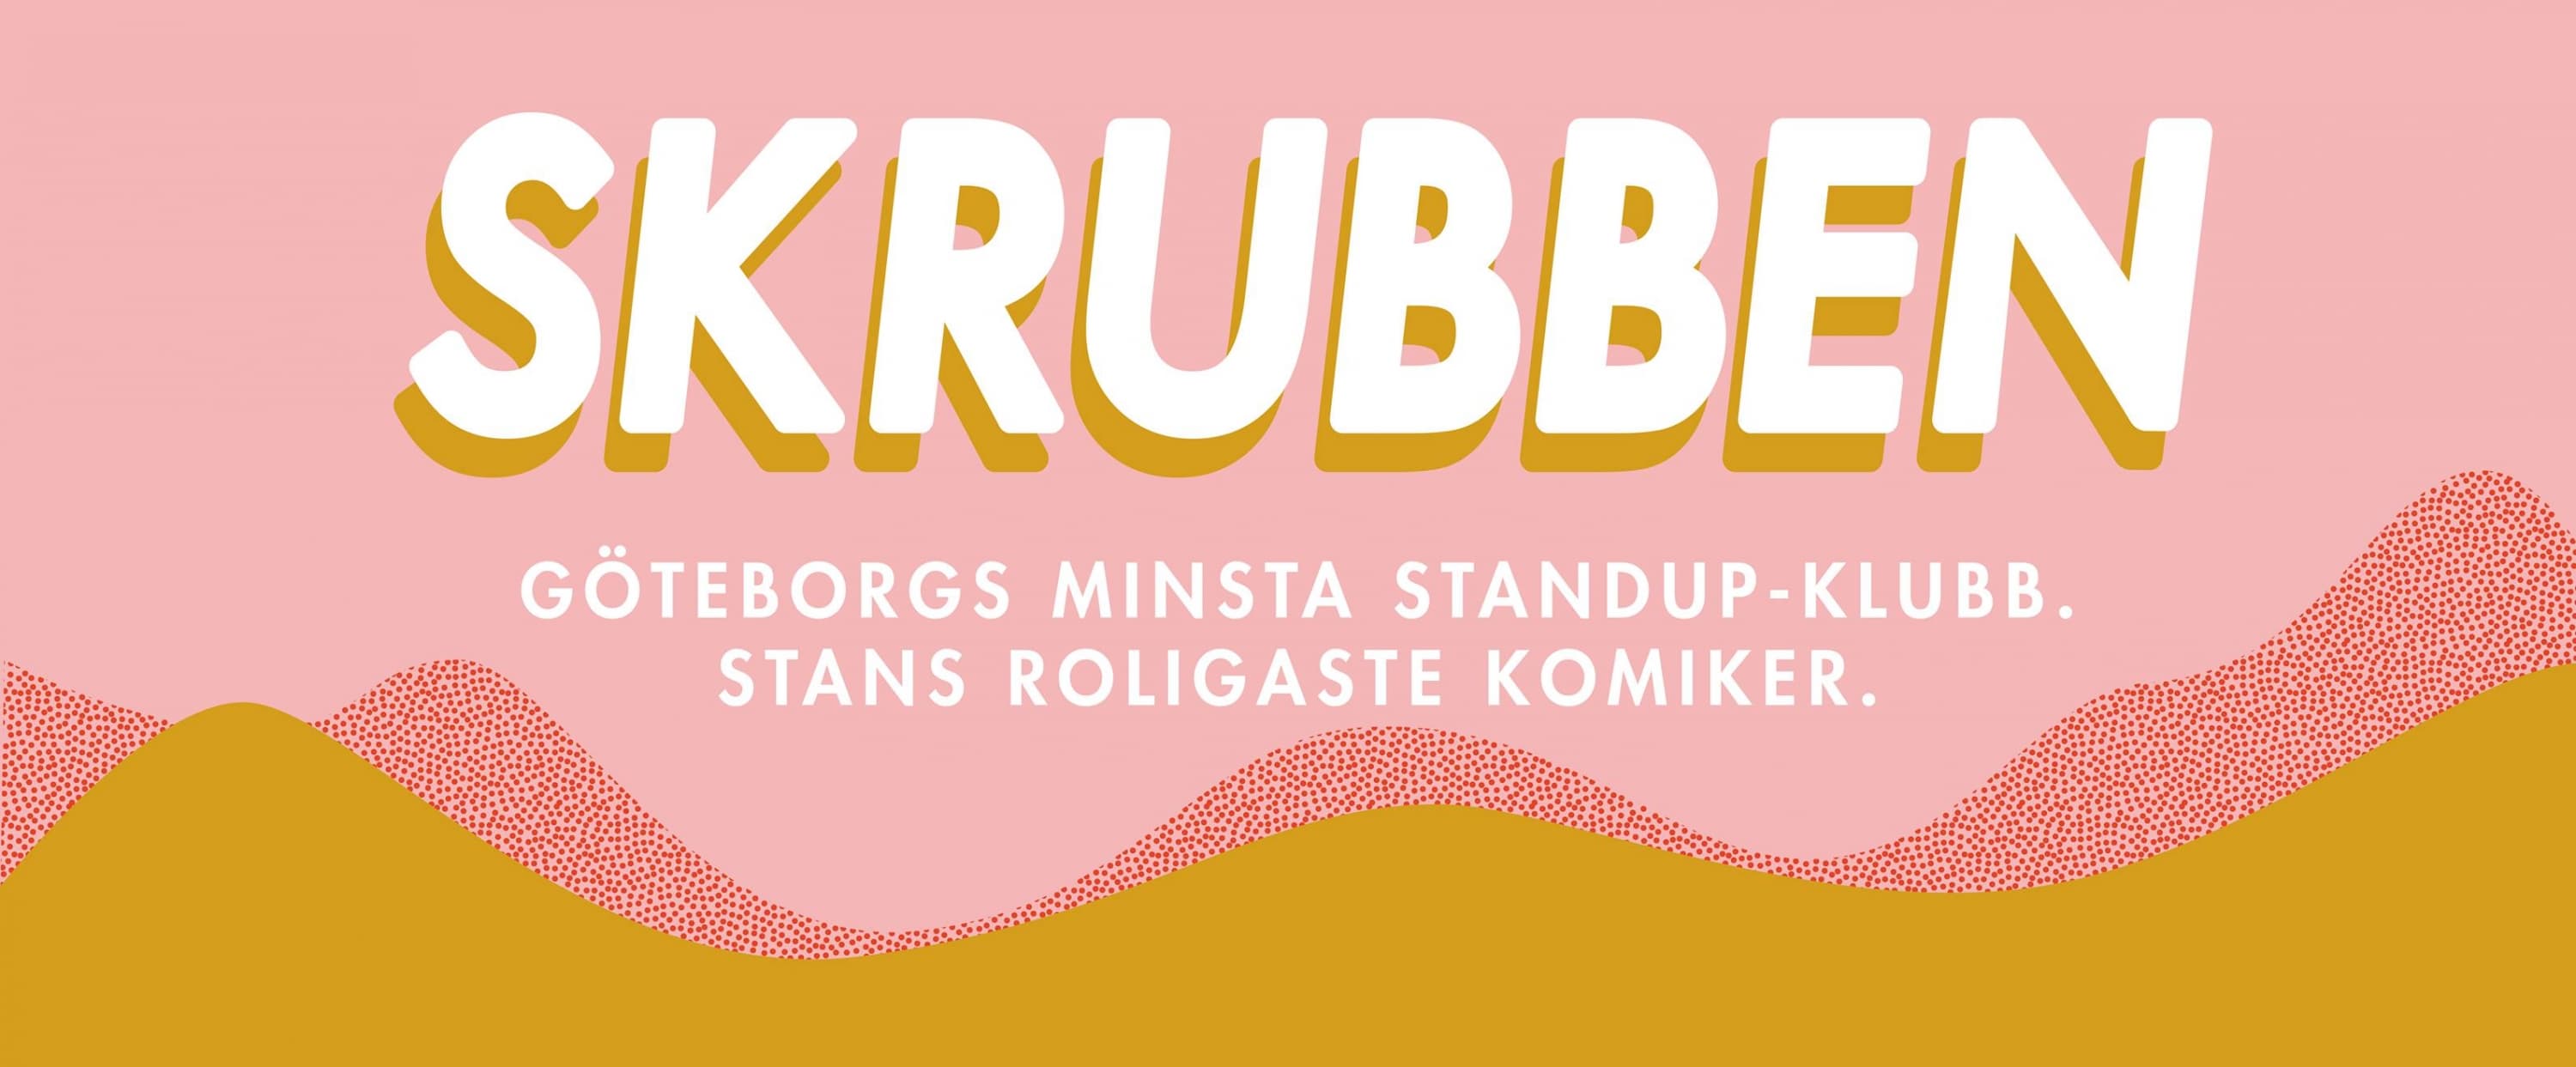 Premiär för Göteborgs minsta standup-klubb